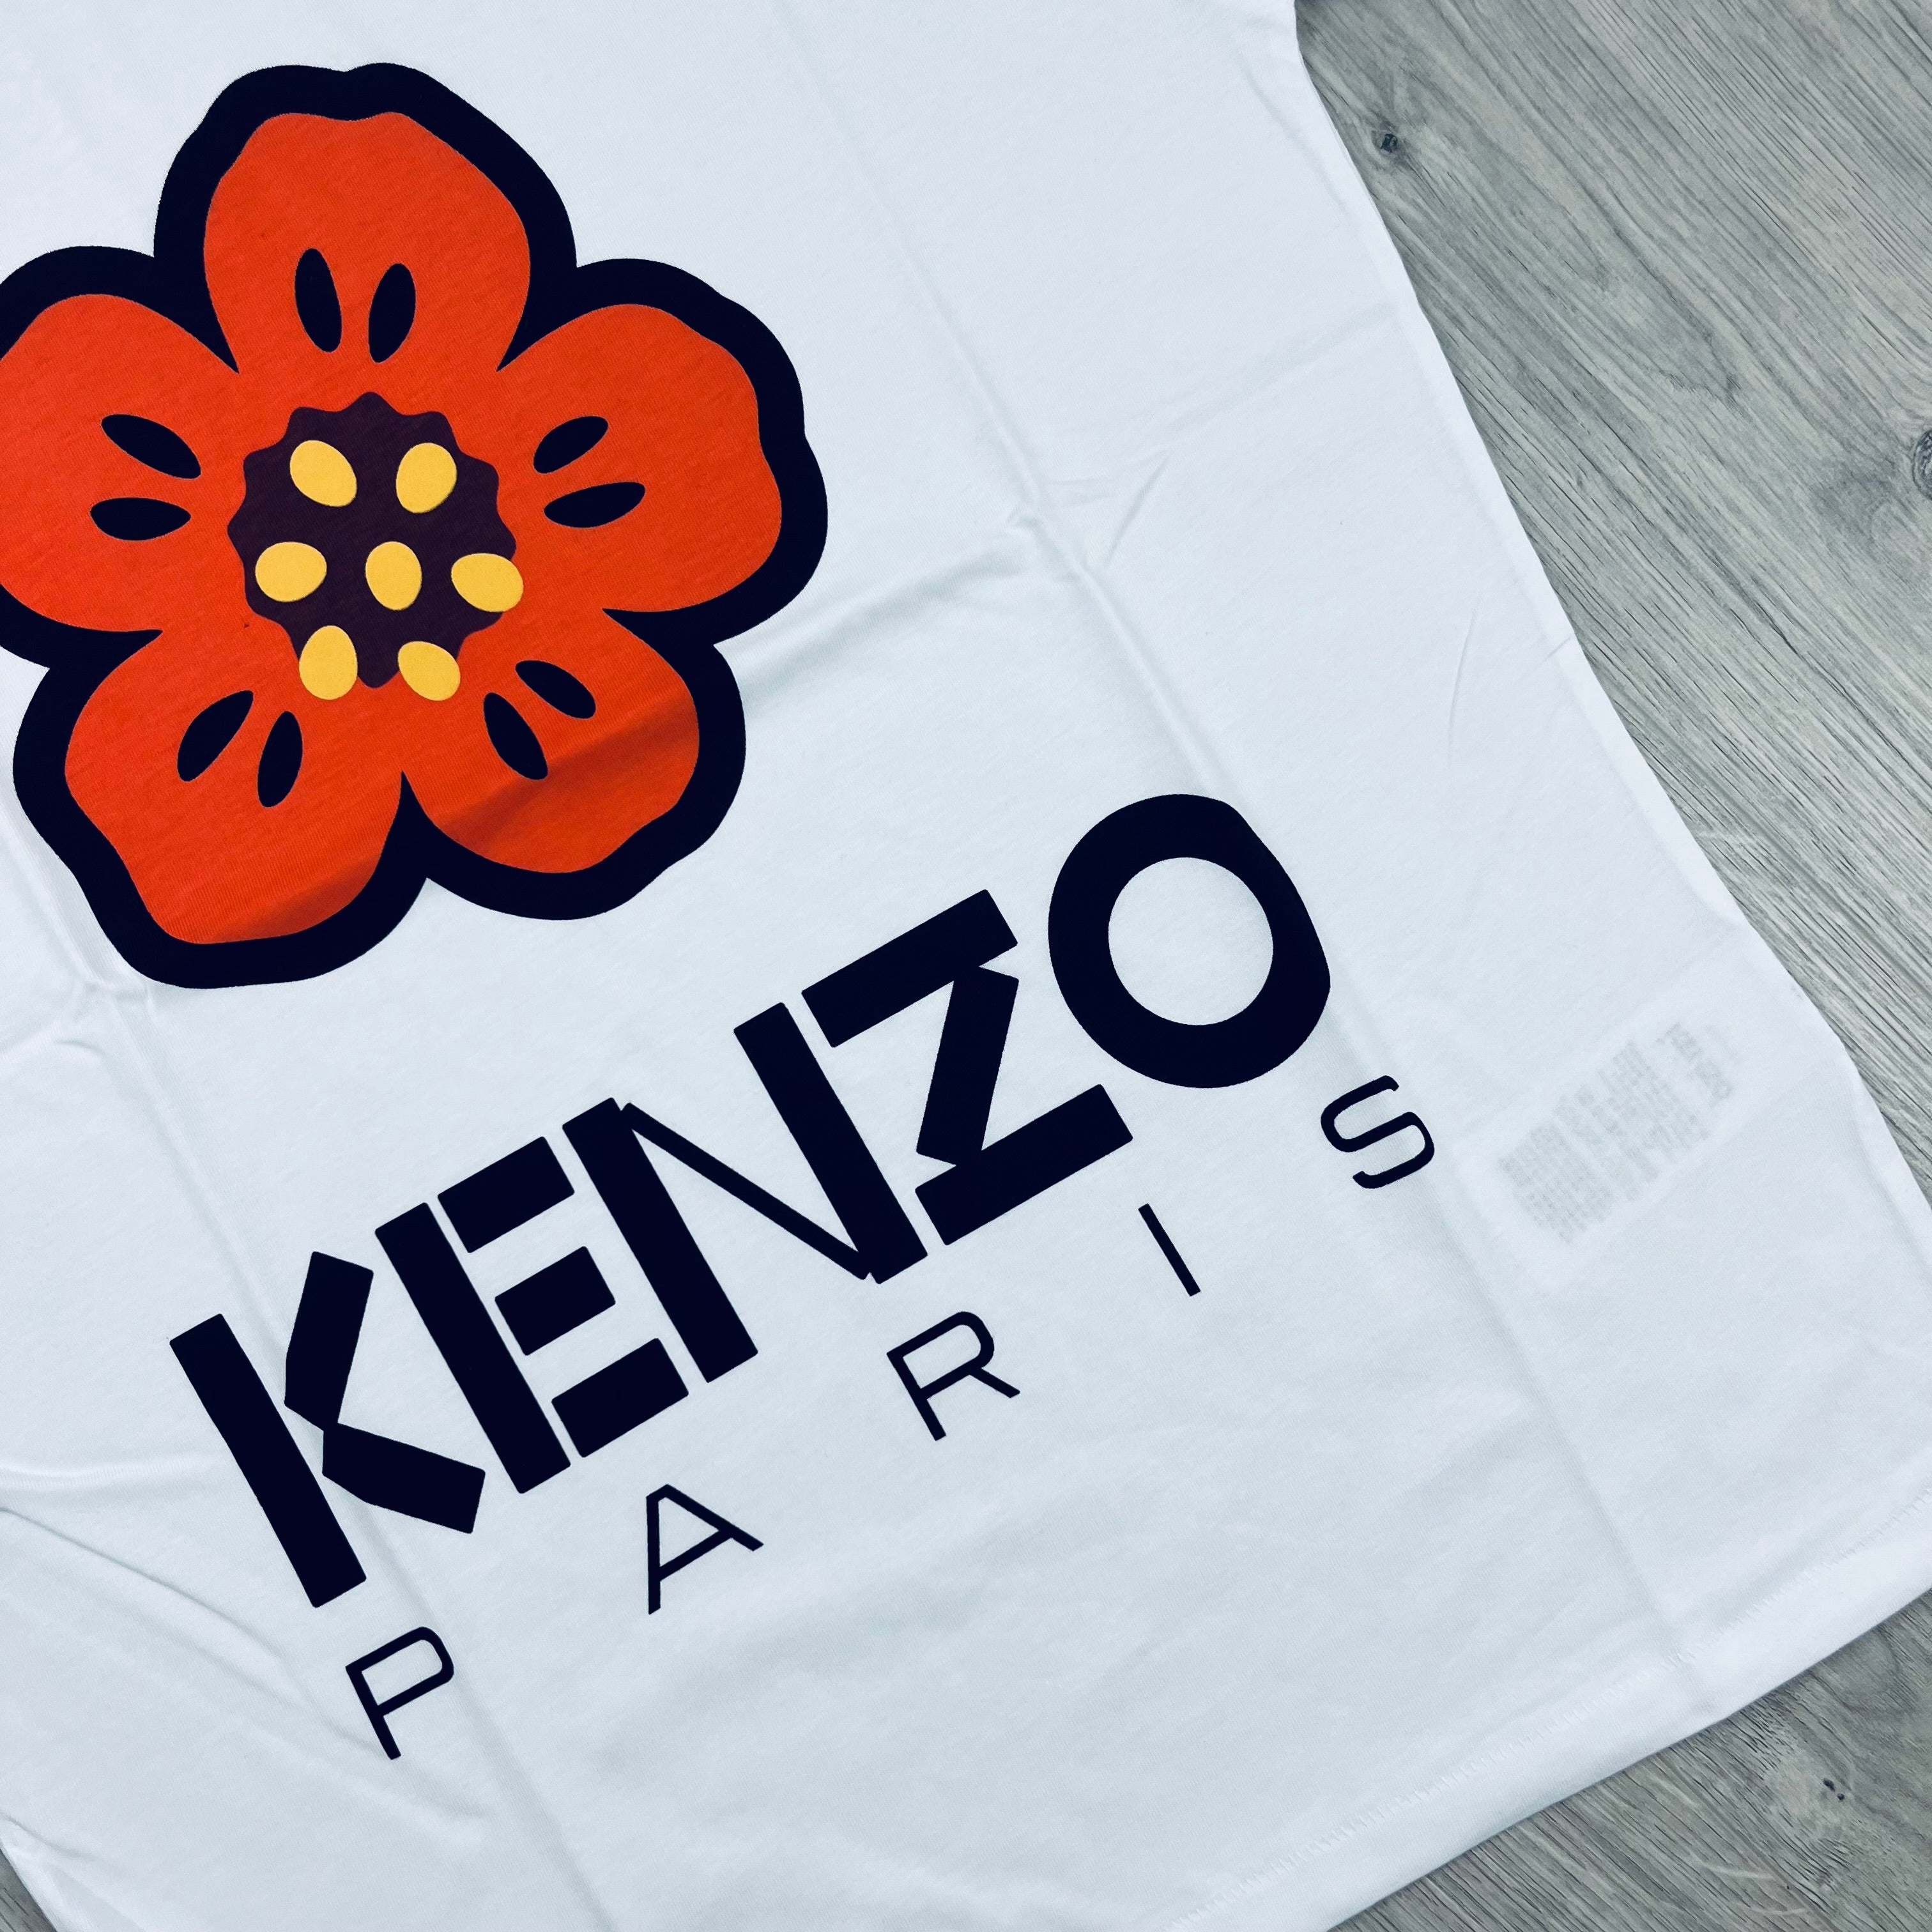 Kenzo Boke T-Shirt